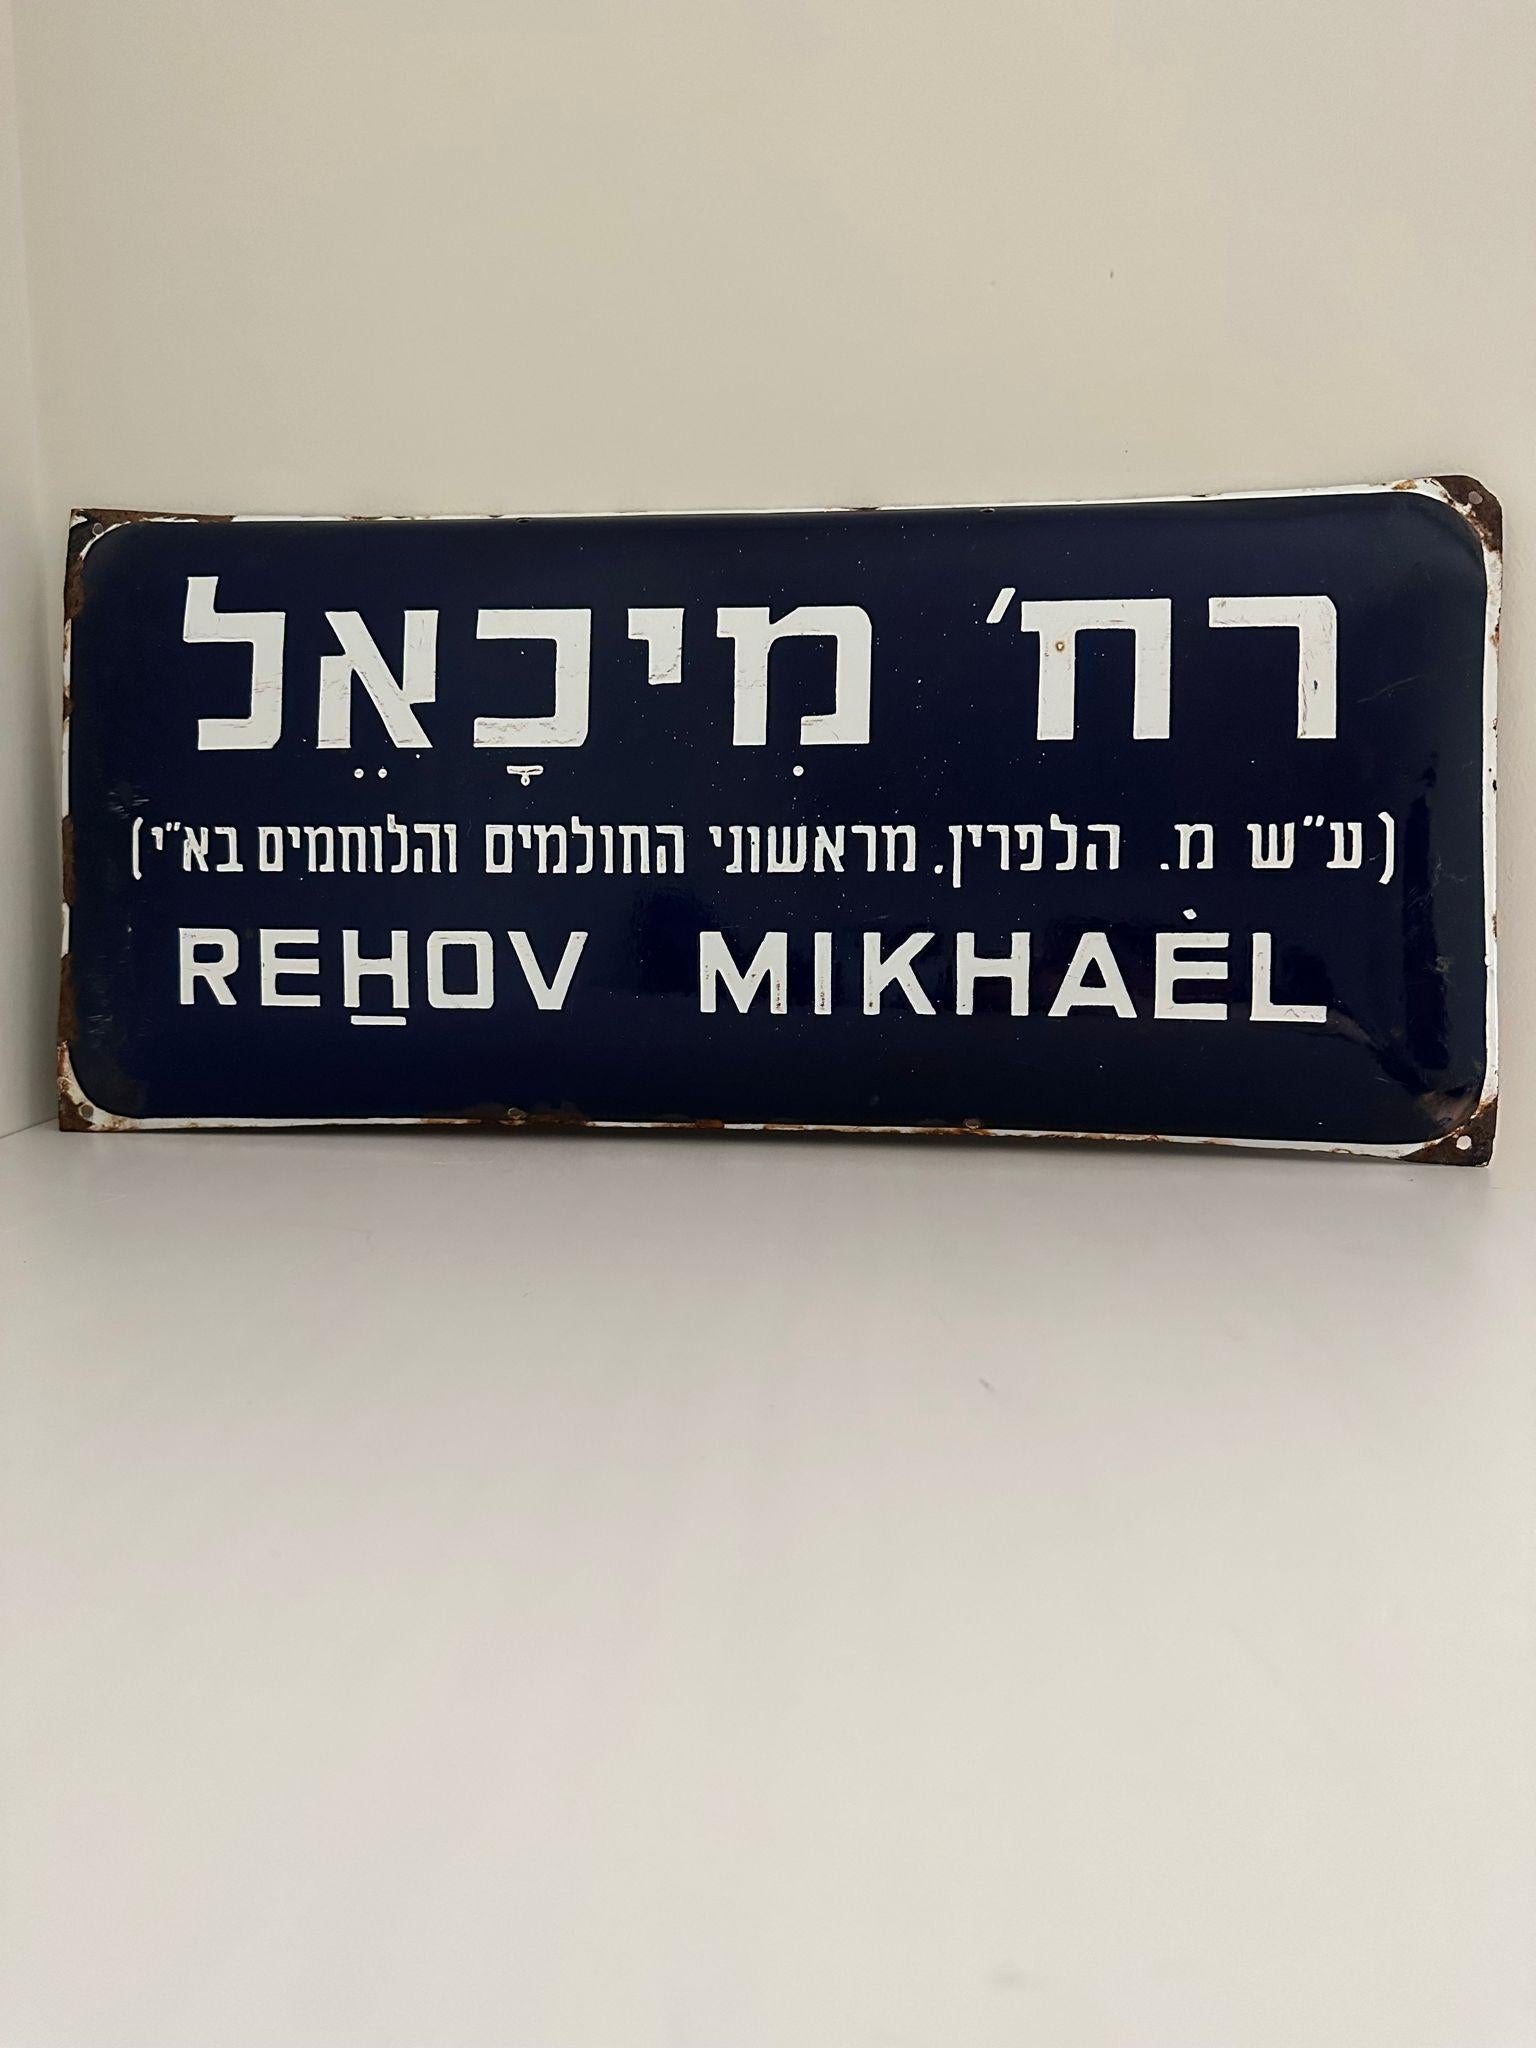 Mitte des 20. Jahrhunderts handgefertigtes israelisches Straßenschild. Dieses aus Emaille und Eisen gefertigte Straßenschild wurde kurz nach der Gründung des Staates Israel im Jahr 1948 geschaffen. Das Zeichen ist in blitzweißen Buchstaben auf